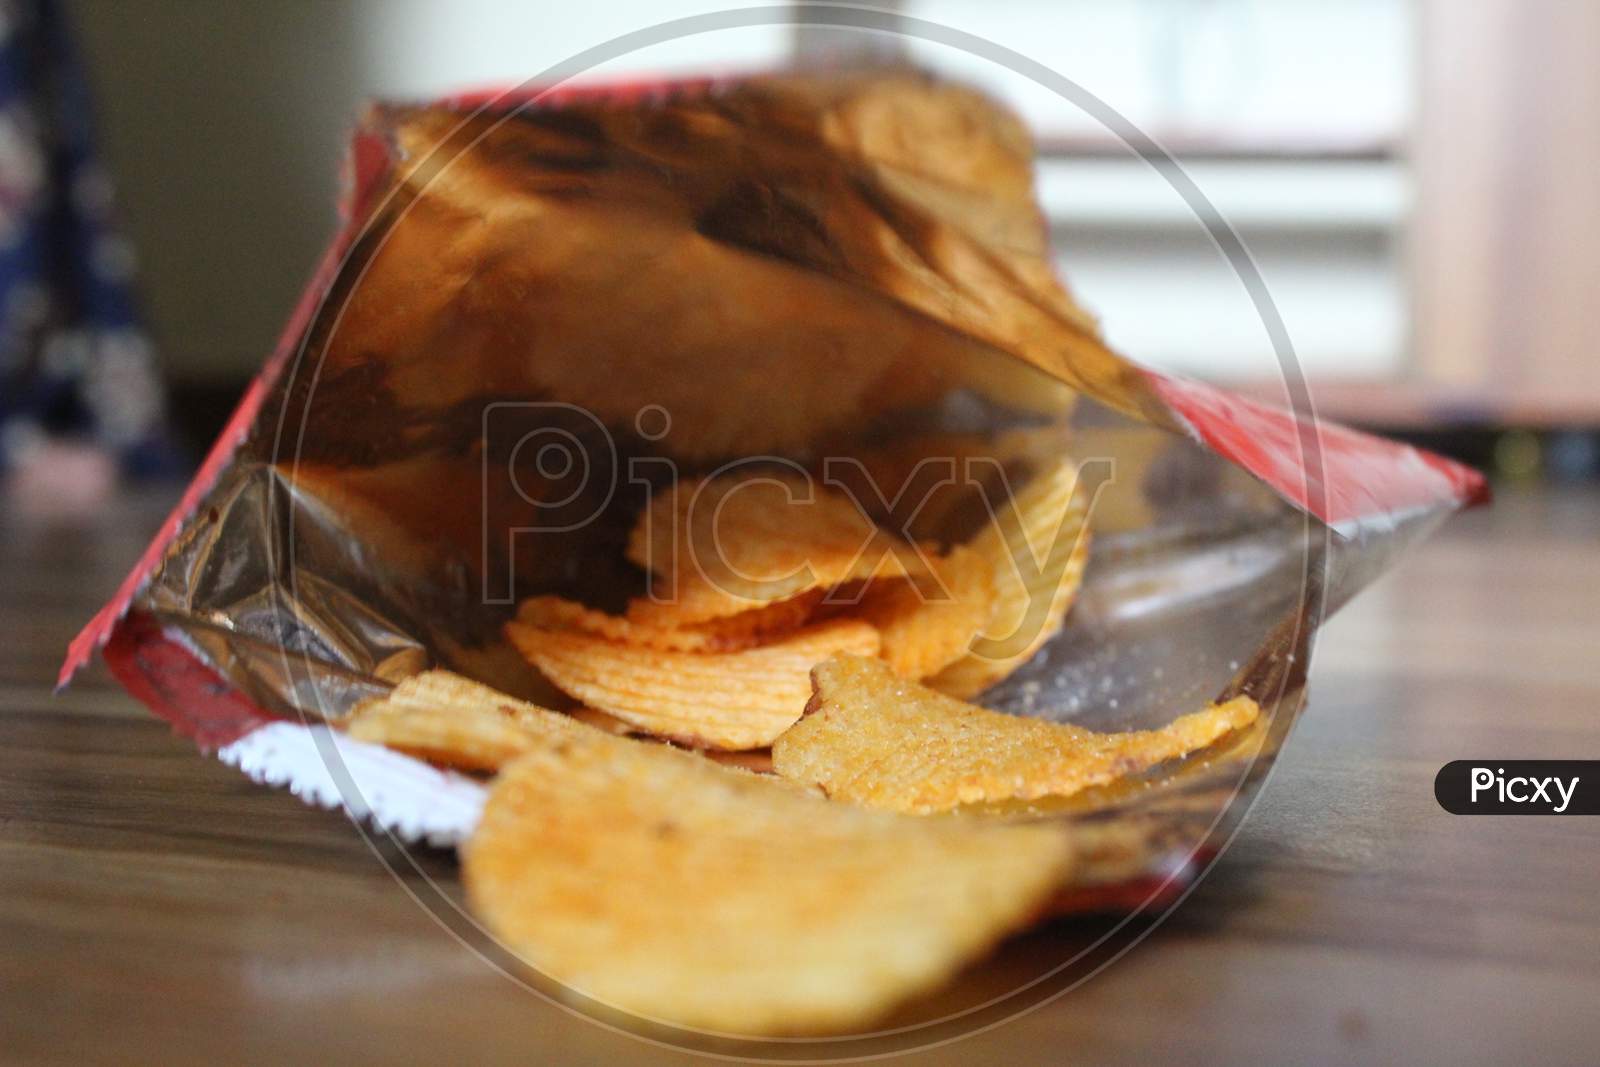 Potato chips photo.